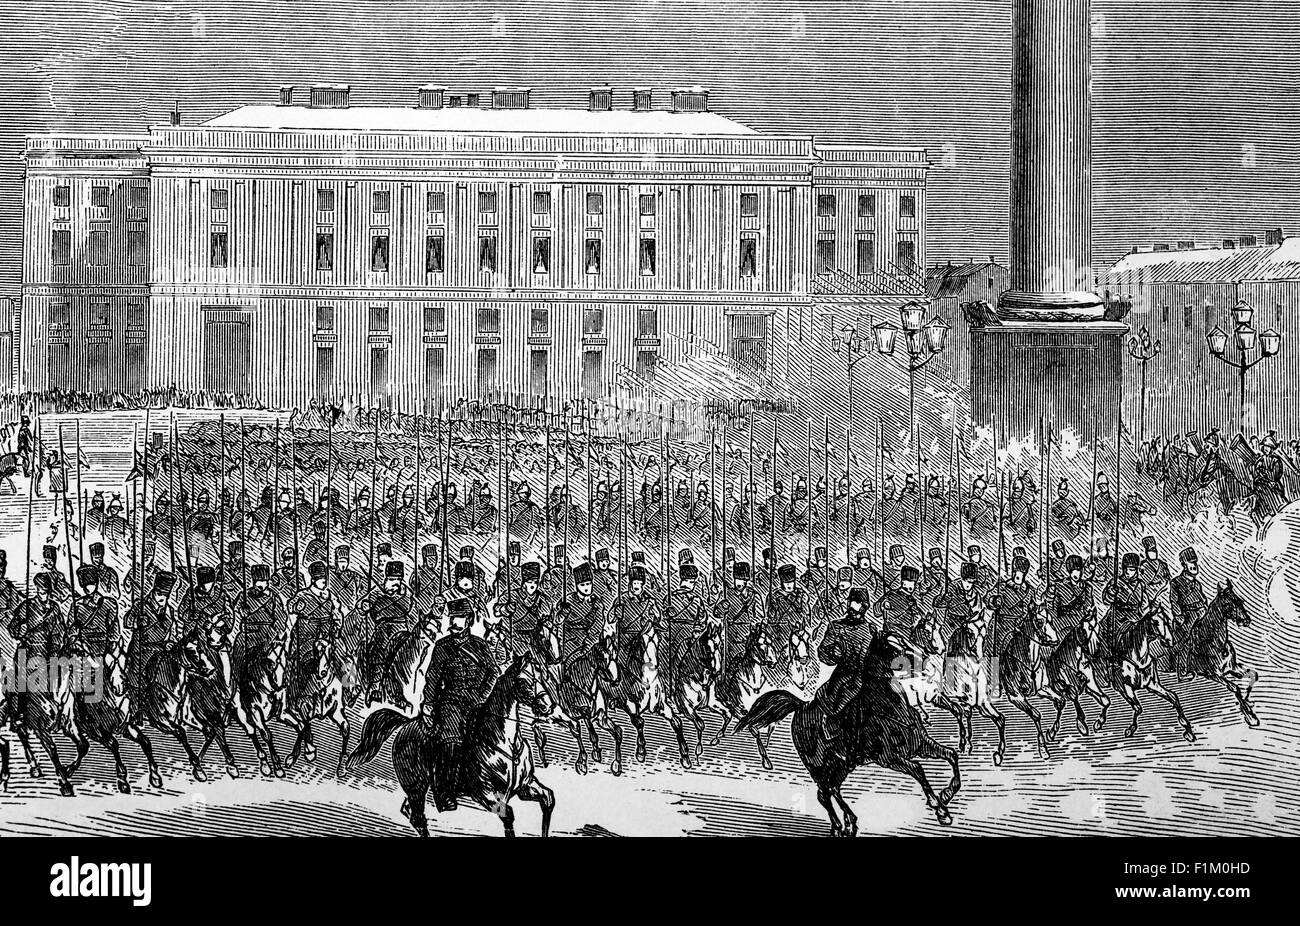 Manœuvres militaires russes du XIXe siècle. L'Armée impériale russe était la force armée terrestre de l'Empire russe, active d'environ 1721 à la Révolution russe de 1917. Au début des années 1850, l'armée russe était composée de plus de 900,000 soldats réguliers et de près de 250,000 irréguliers (surtout des cosaques) Banque D'Images